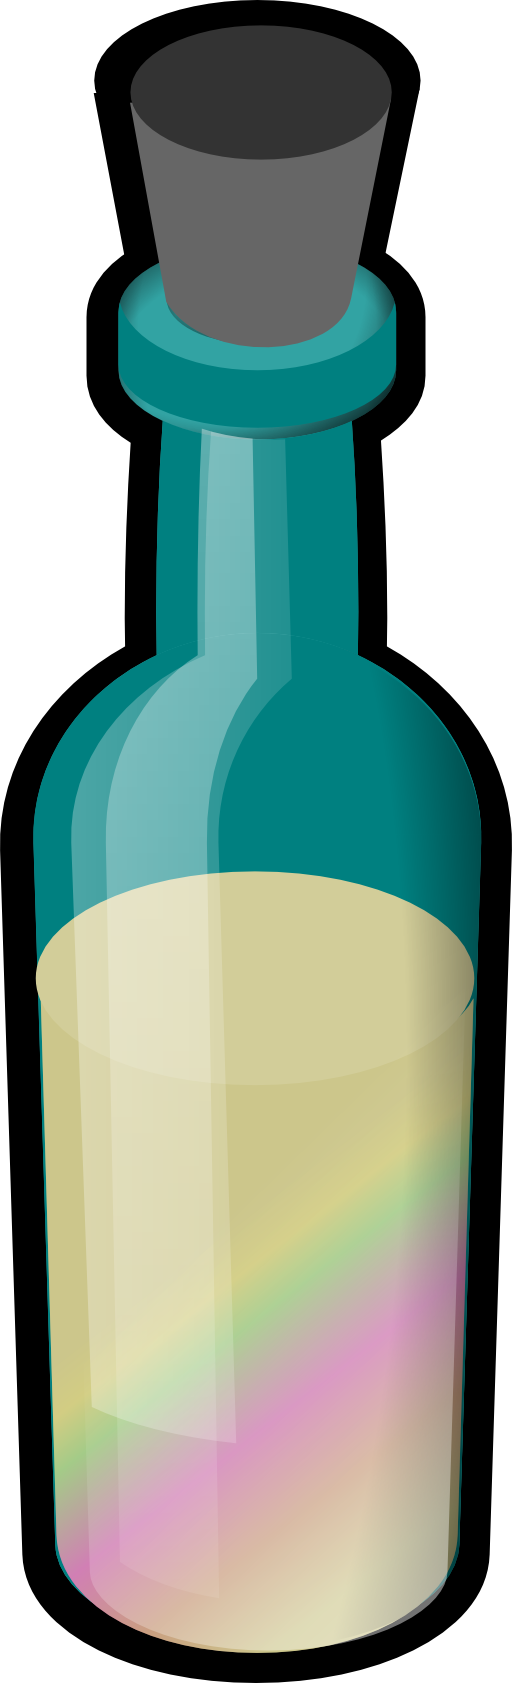 experiment clipart bottle